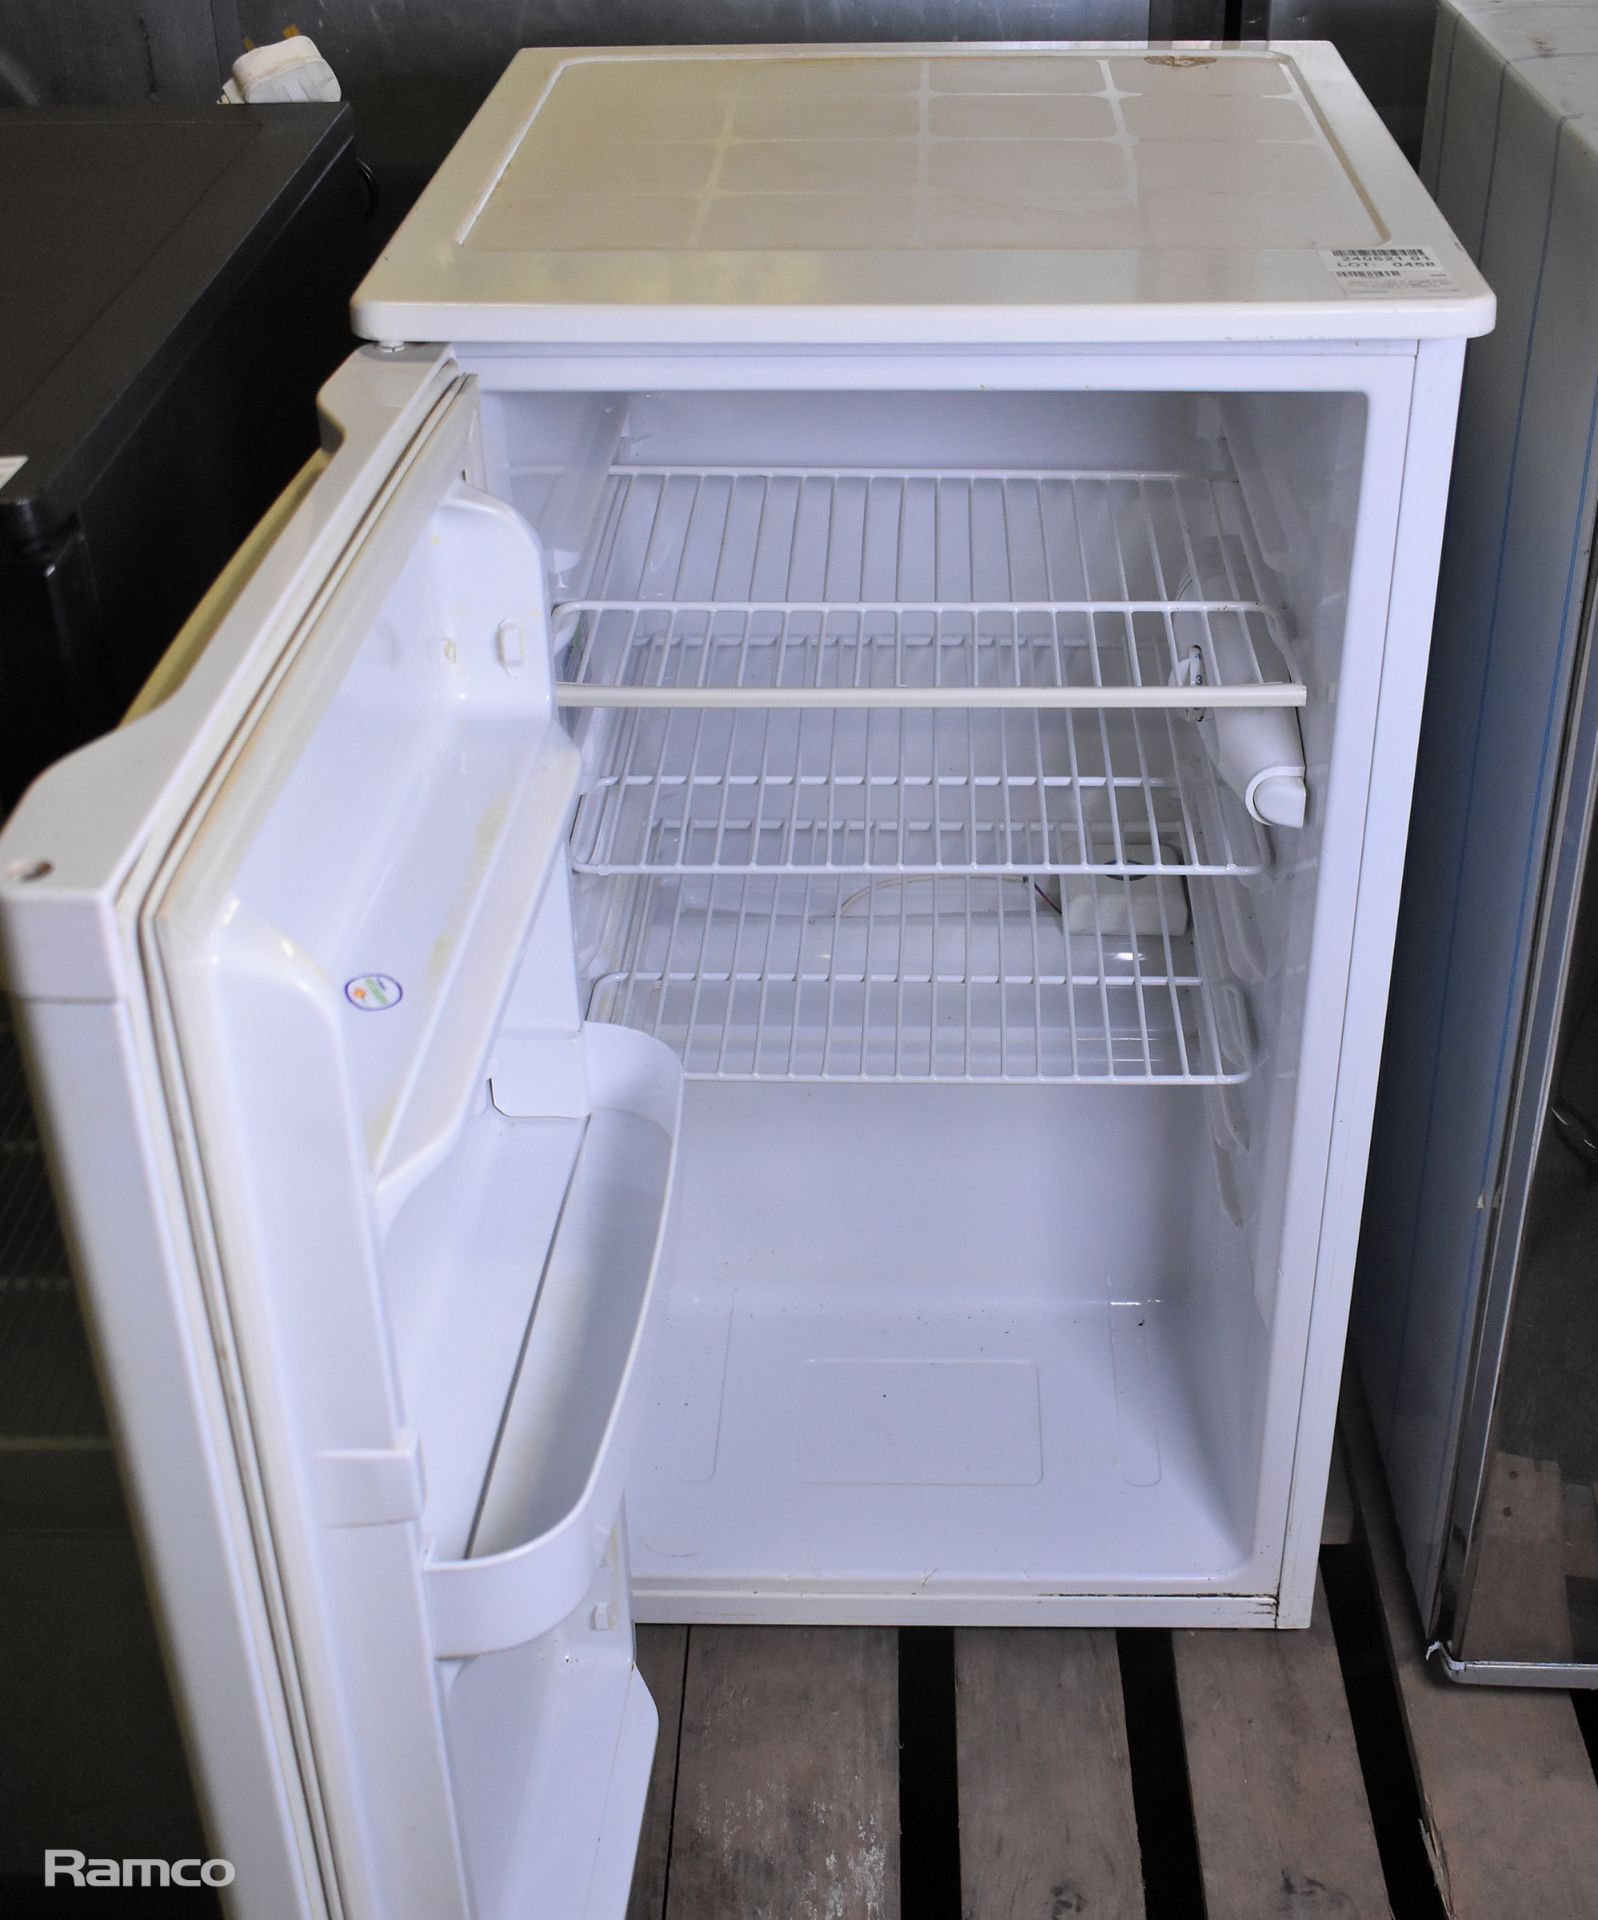 Beko LC 120 W single door under counter fridge - W 490 x D 540 x H 850mm - Image 2 of 4